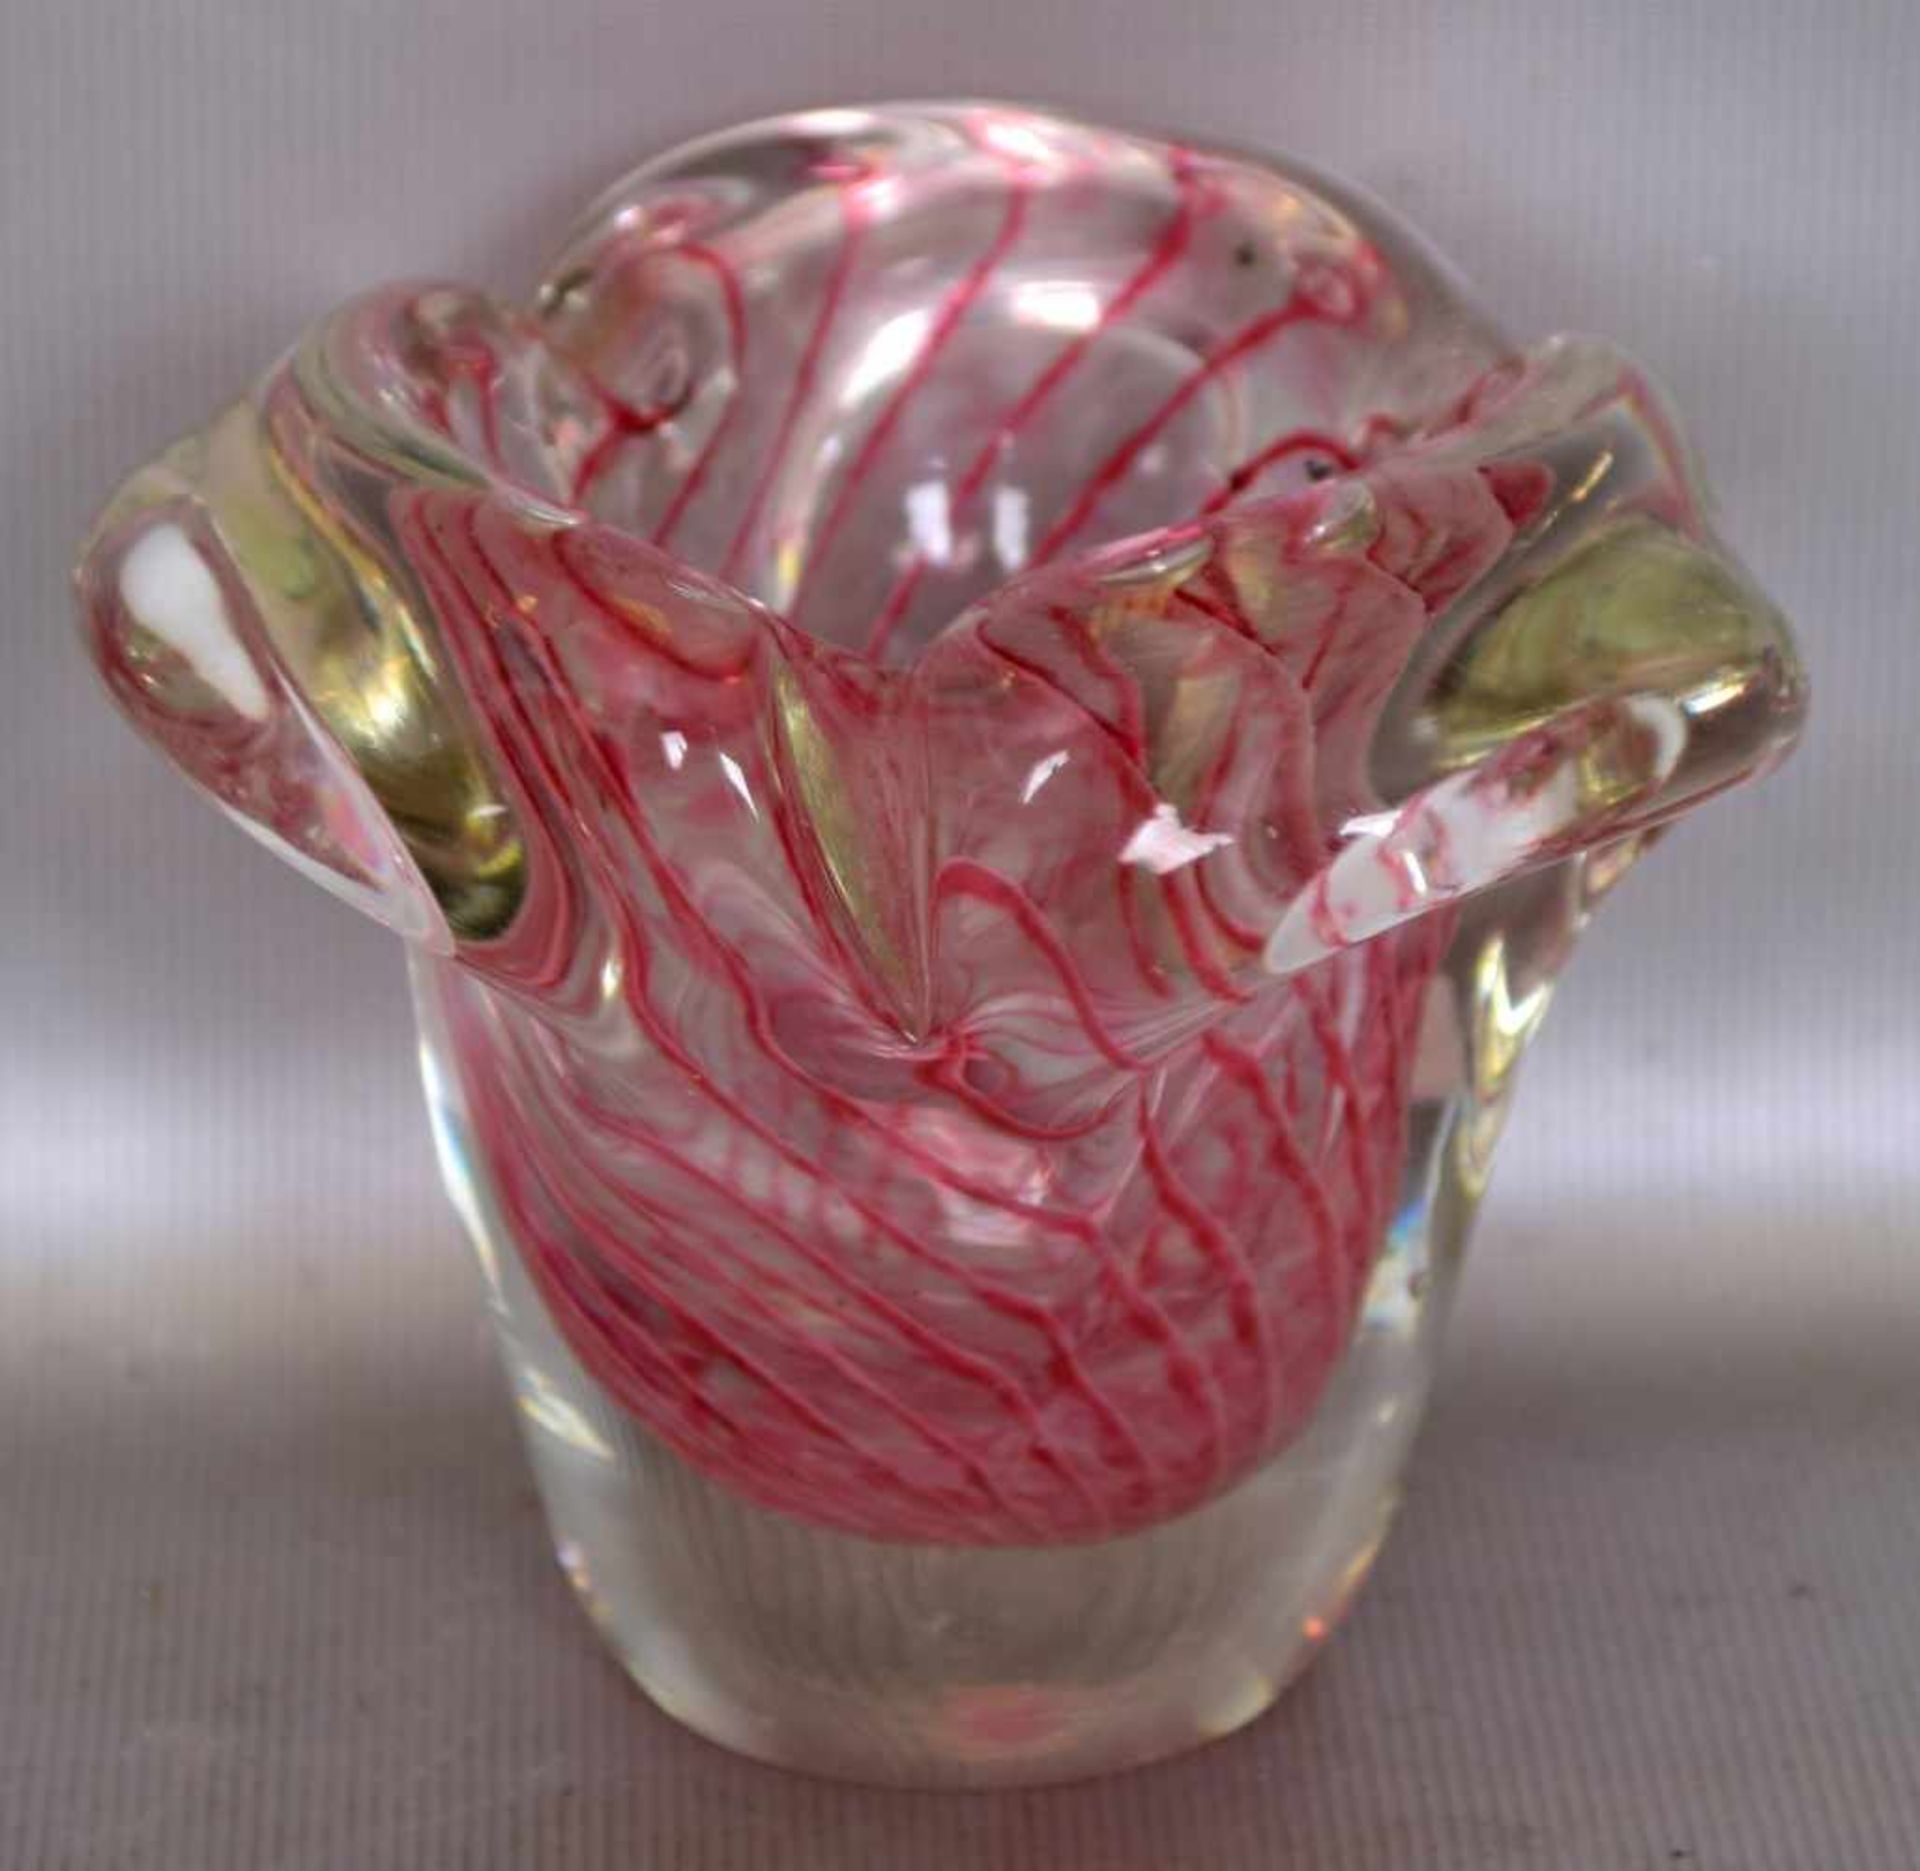 Vasefarbl. Glas, mit roten Fäden, unregelmäßig gezogener Rand, H 7 cm